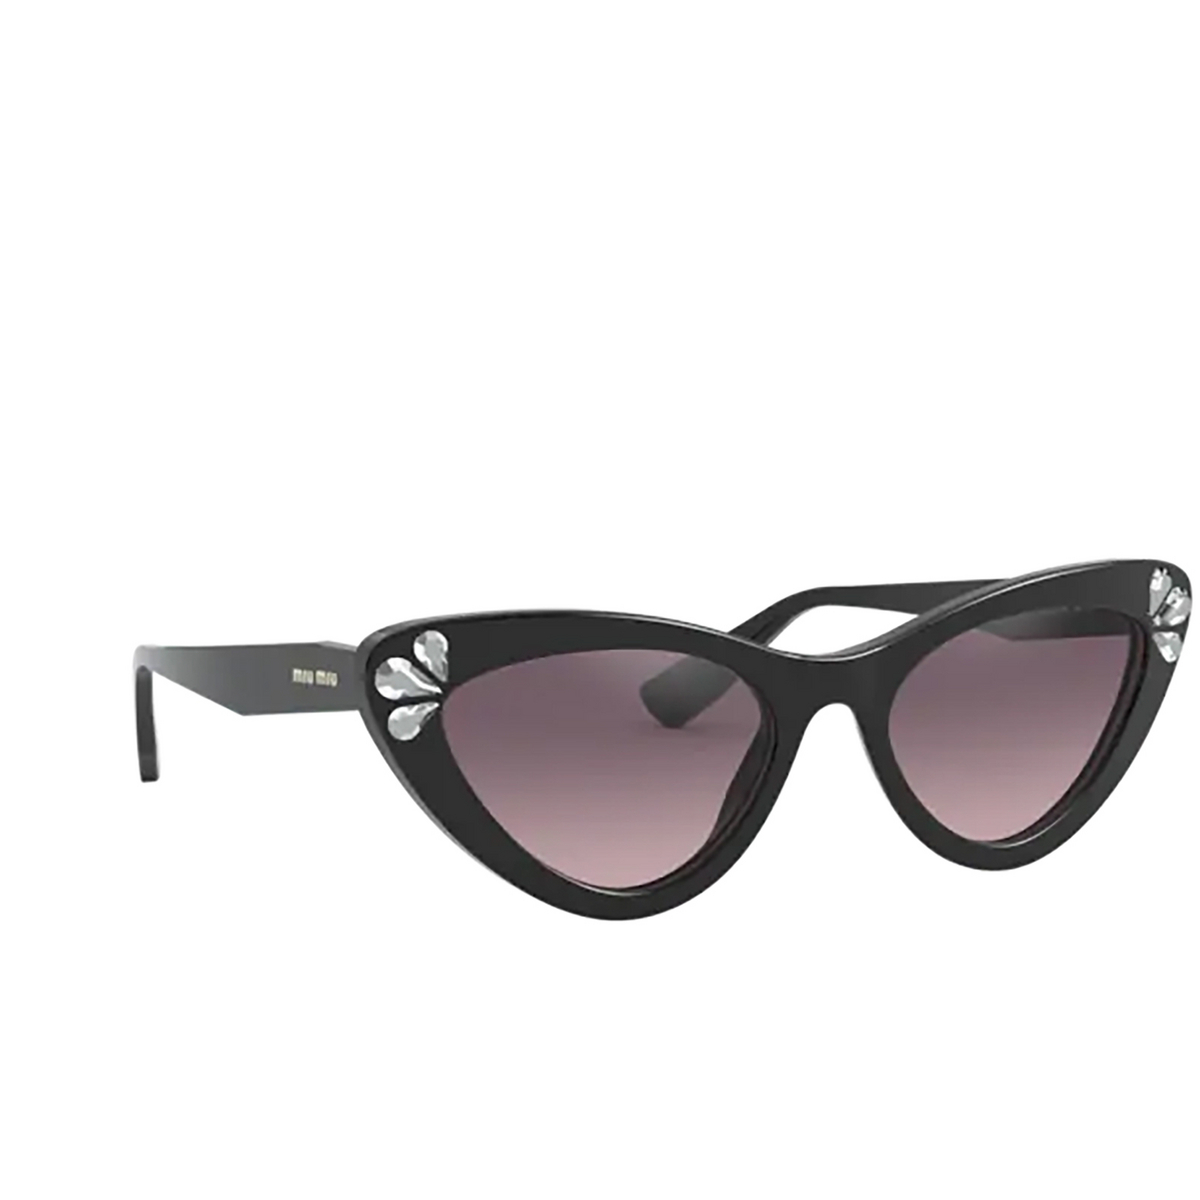 Miu Miu® Sunglasses: MU 01VS color Black 152146 - front view.